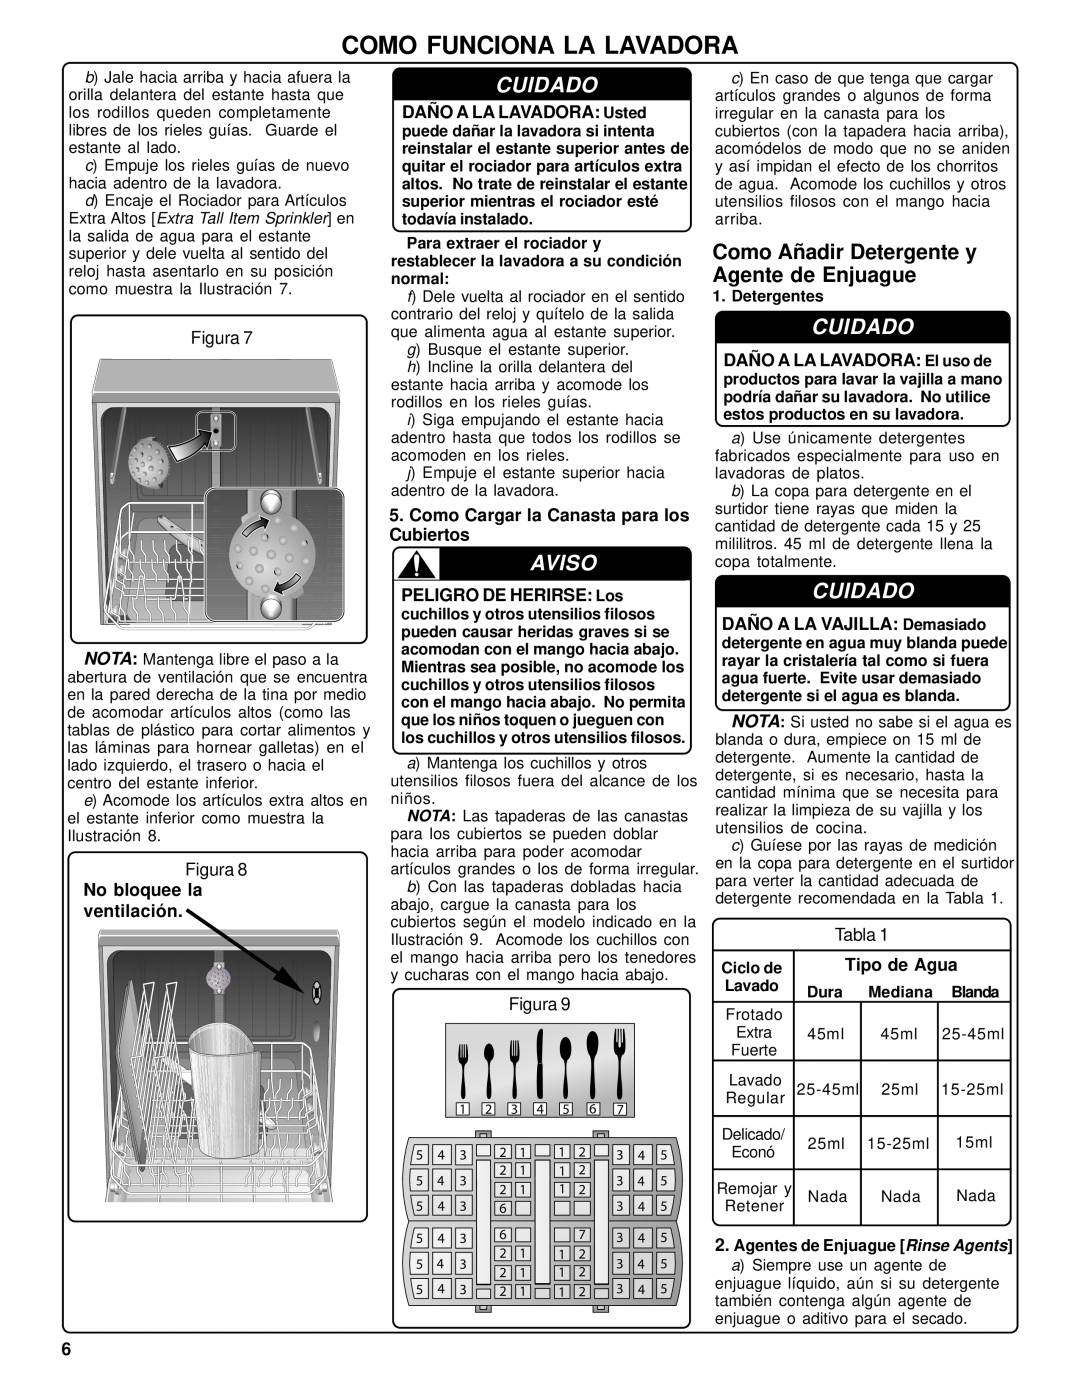 Bosch Appliances SHU42L Como Funciona La Lavadora, Cuidado, Aviso, No bloquee la ventilación, Tipo de Agua, Detergentes 